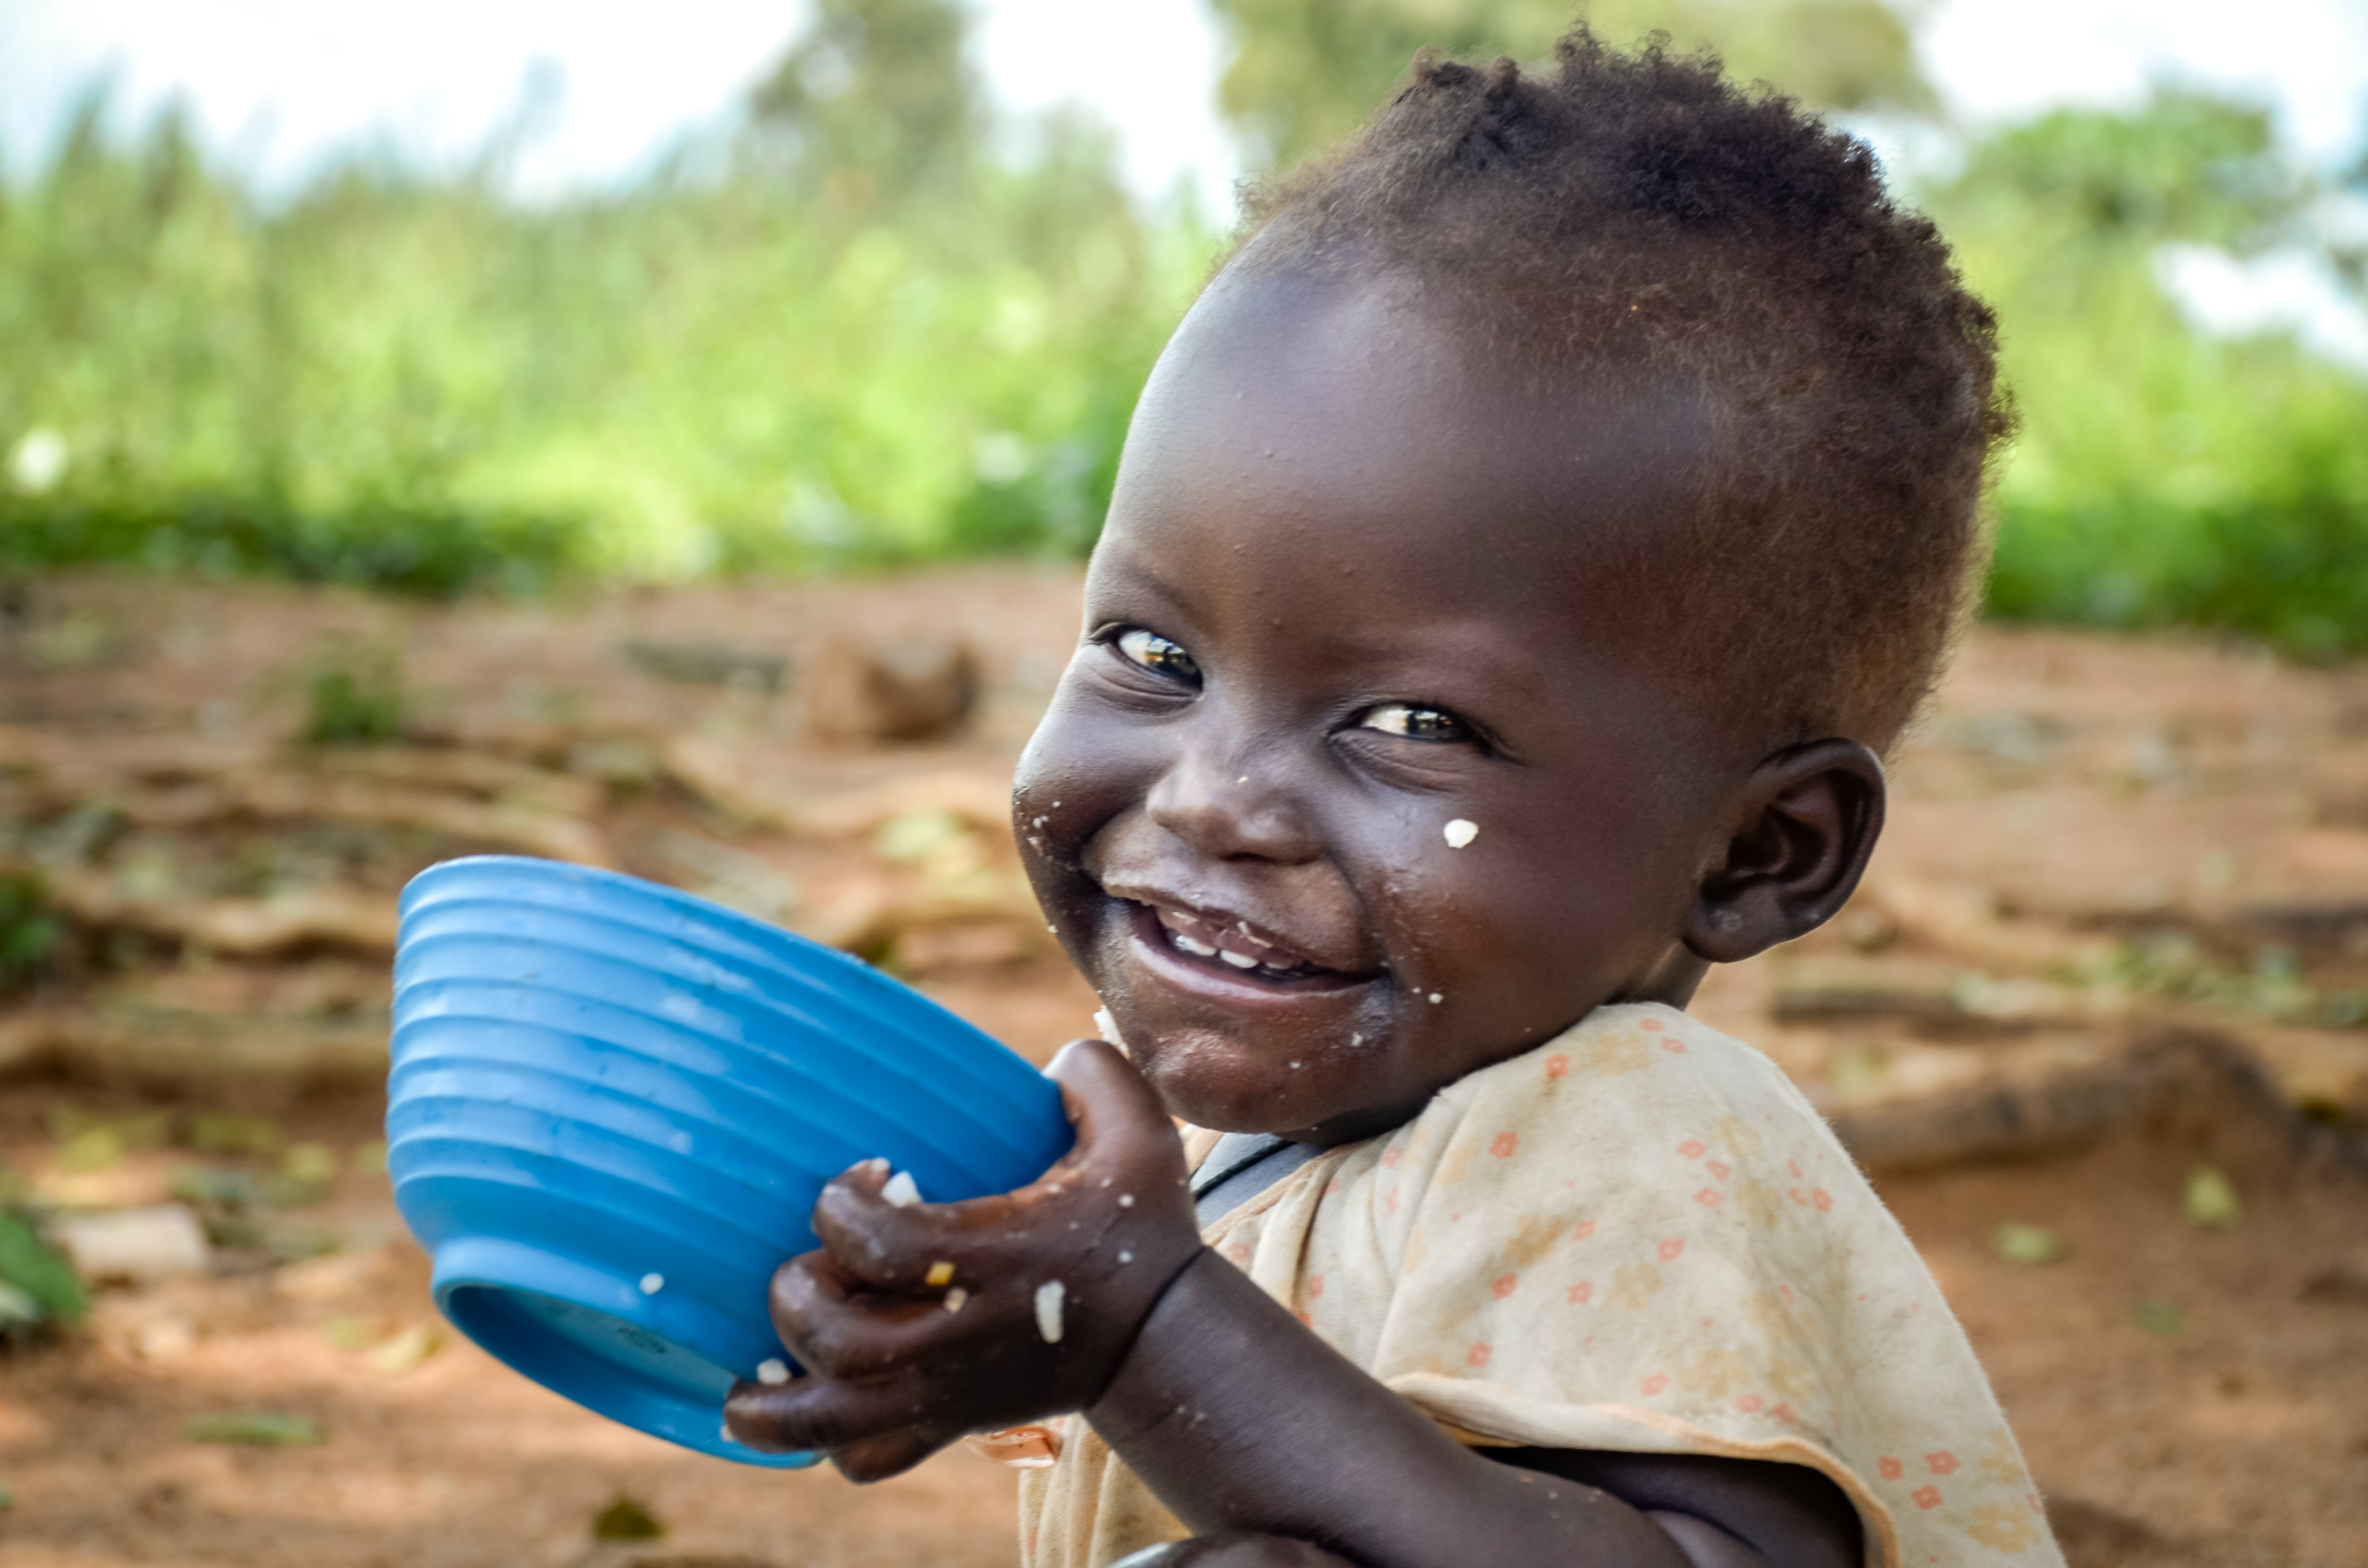 World Vision Uganda Food Assistance South Sudanese Refugees Bidibidi settlement Yumbe West Nile